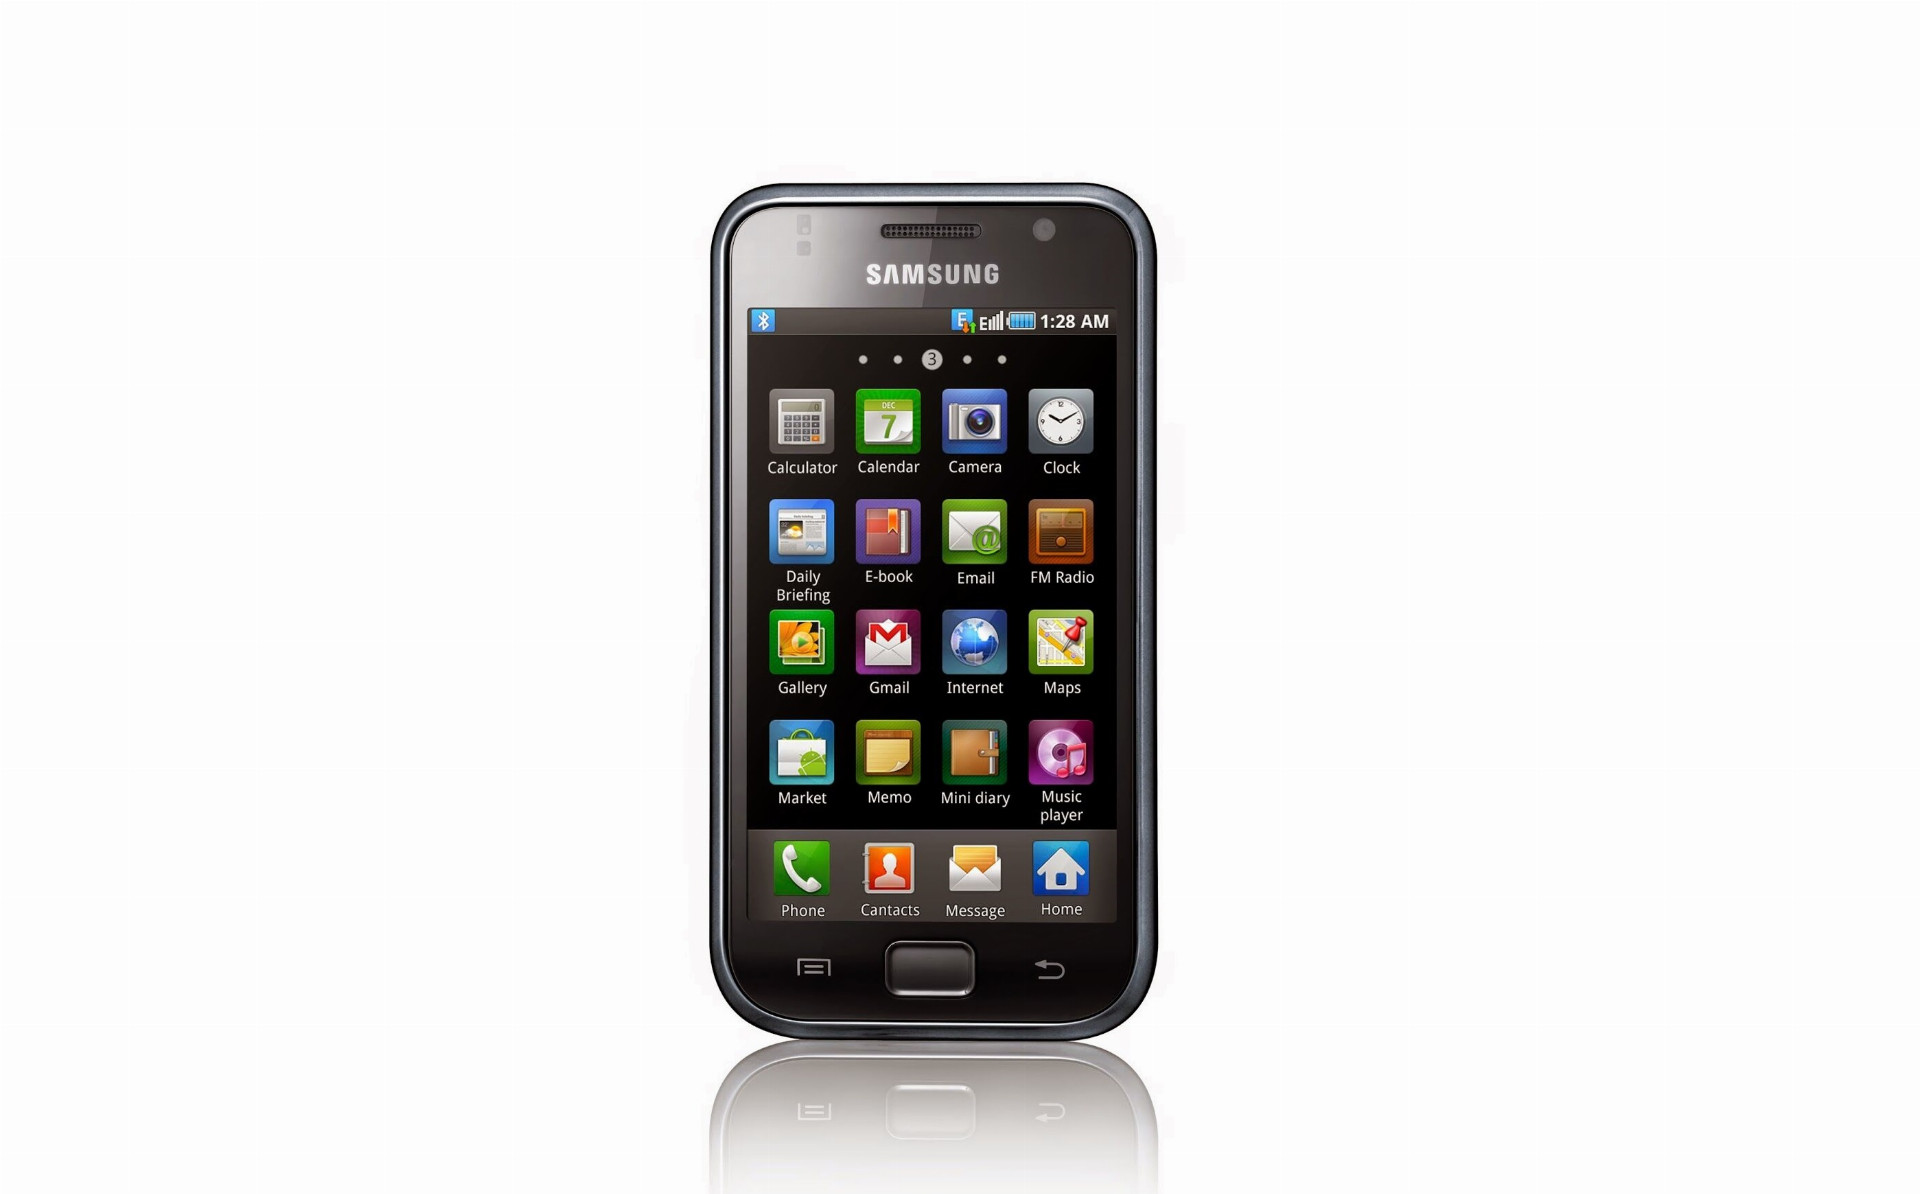 Prvý smartfón z tejto línie s názvom Samsung Galaxy S uviedol Samsung na trh v roku 2010. Predstavoval základ, od ktorého sa výrobca v nasledujúcich obdobiach odrážal. Na svoju dobu mal najrýchlejší grafický procesor a s hrúbkou 9,9 mm bol najtenším smartfónom na vtedajšom trhu. Už vtedy obsahoval Super AMOLED displej s veľkosťou 4 palce (480 x 800 p). V prvých recenziách ho médiá veľmi pochvaľovali a okamžite ho zaradili k top Android zariadeniam. Jeho vnútorné úložisko malo zlomok z dnešných hodnôt, presnejšie 512 MB pamäte RAM a 8/16 GB úložného priestoru. V čase uvedenia obsahoval Galaxy S verziu Android 2.1 Eclair. Ako komplexné zariadenie, samozrejme, obsahoval fotoaparát s rozlíšením 5 MP a Samsung si už vtedy uvedomoval dôležitosť selfie – preto tu nechýbala predná kamera, i keď s veľmi nízkym rozlíšením. Batéria s kapacitou 1 500 mAh sa dala vymieňať.